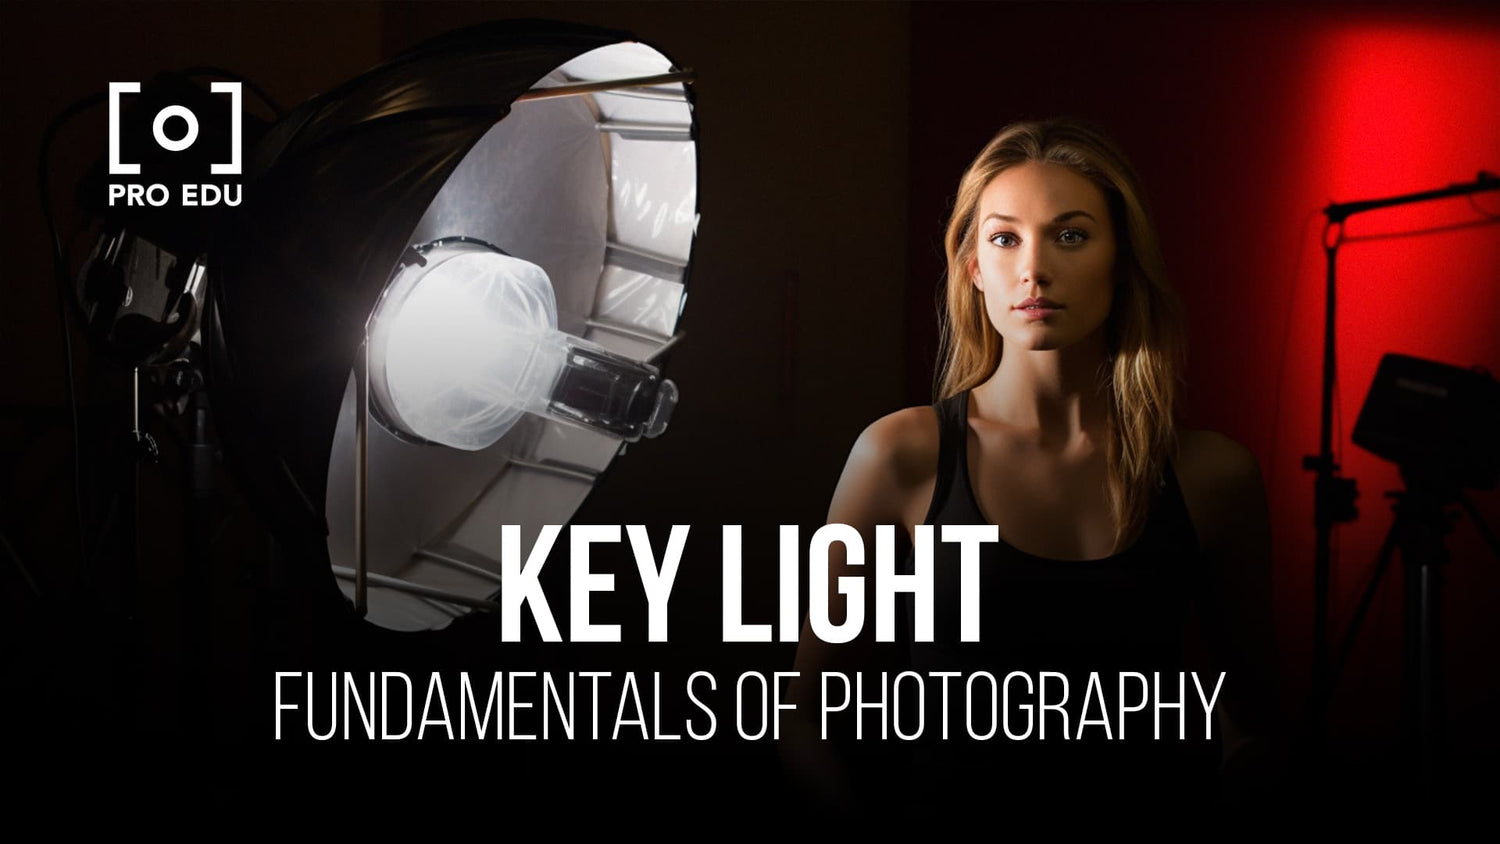 Claves para lograr mejores retratos aprovechando la luz natural